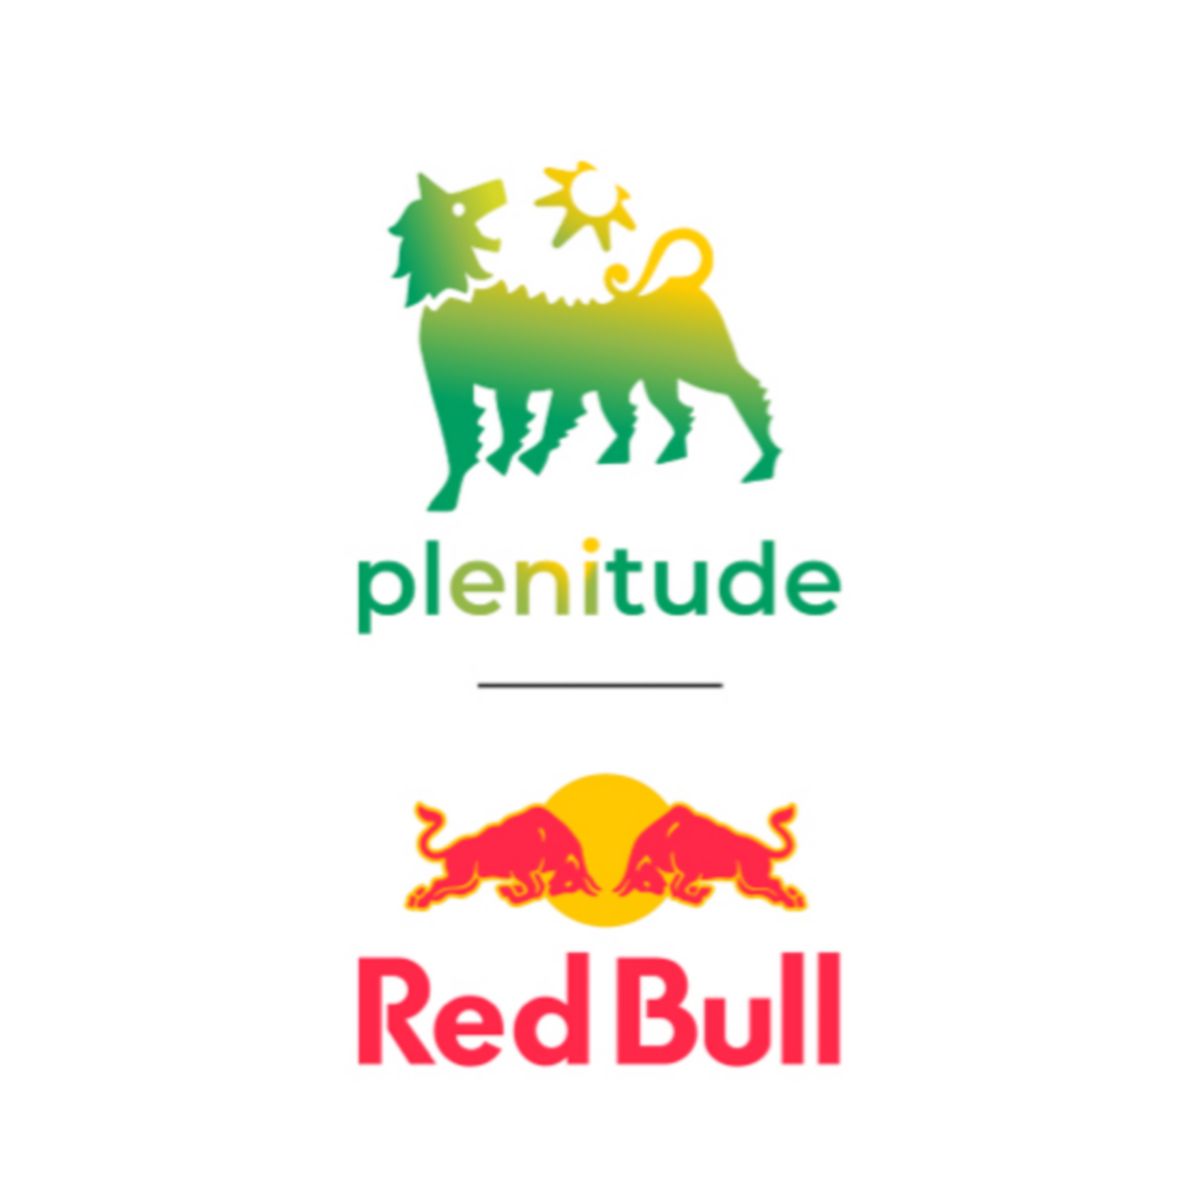 La partnership dell’energia: nell’immagine compaiono il logo Plenitude e il logo Red Bull.